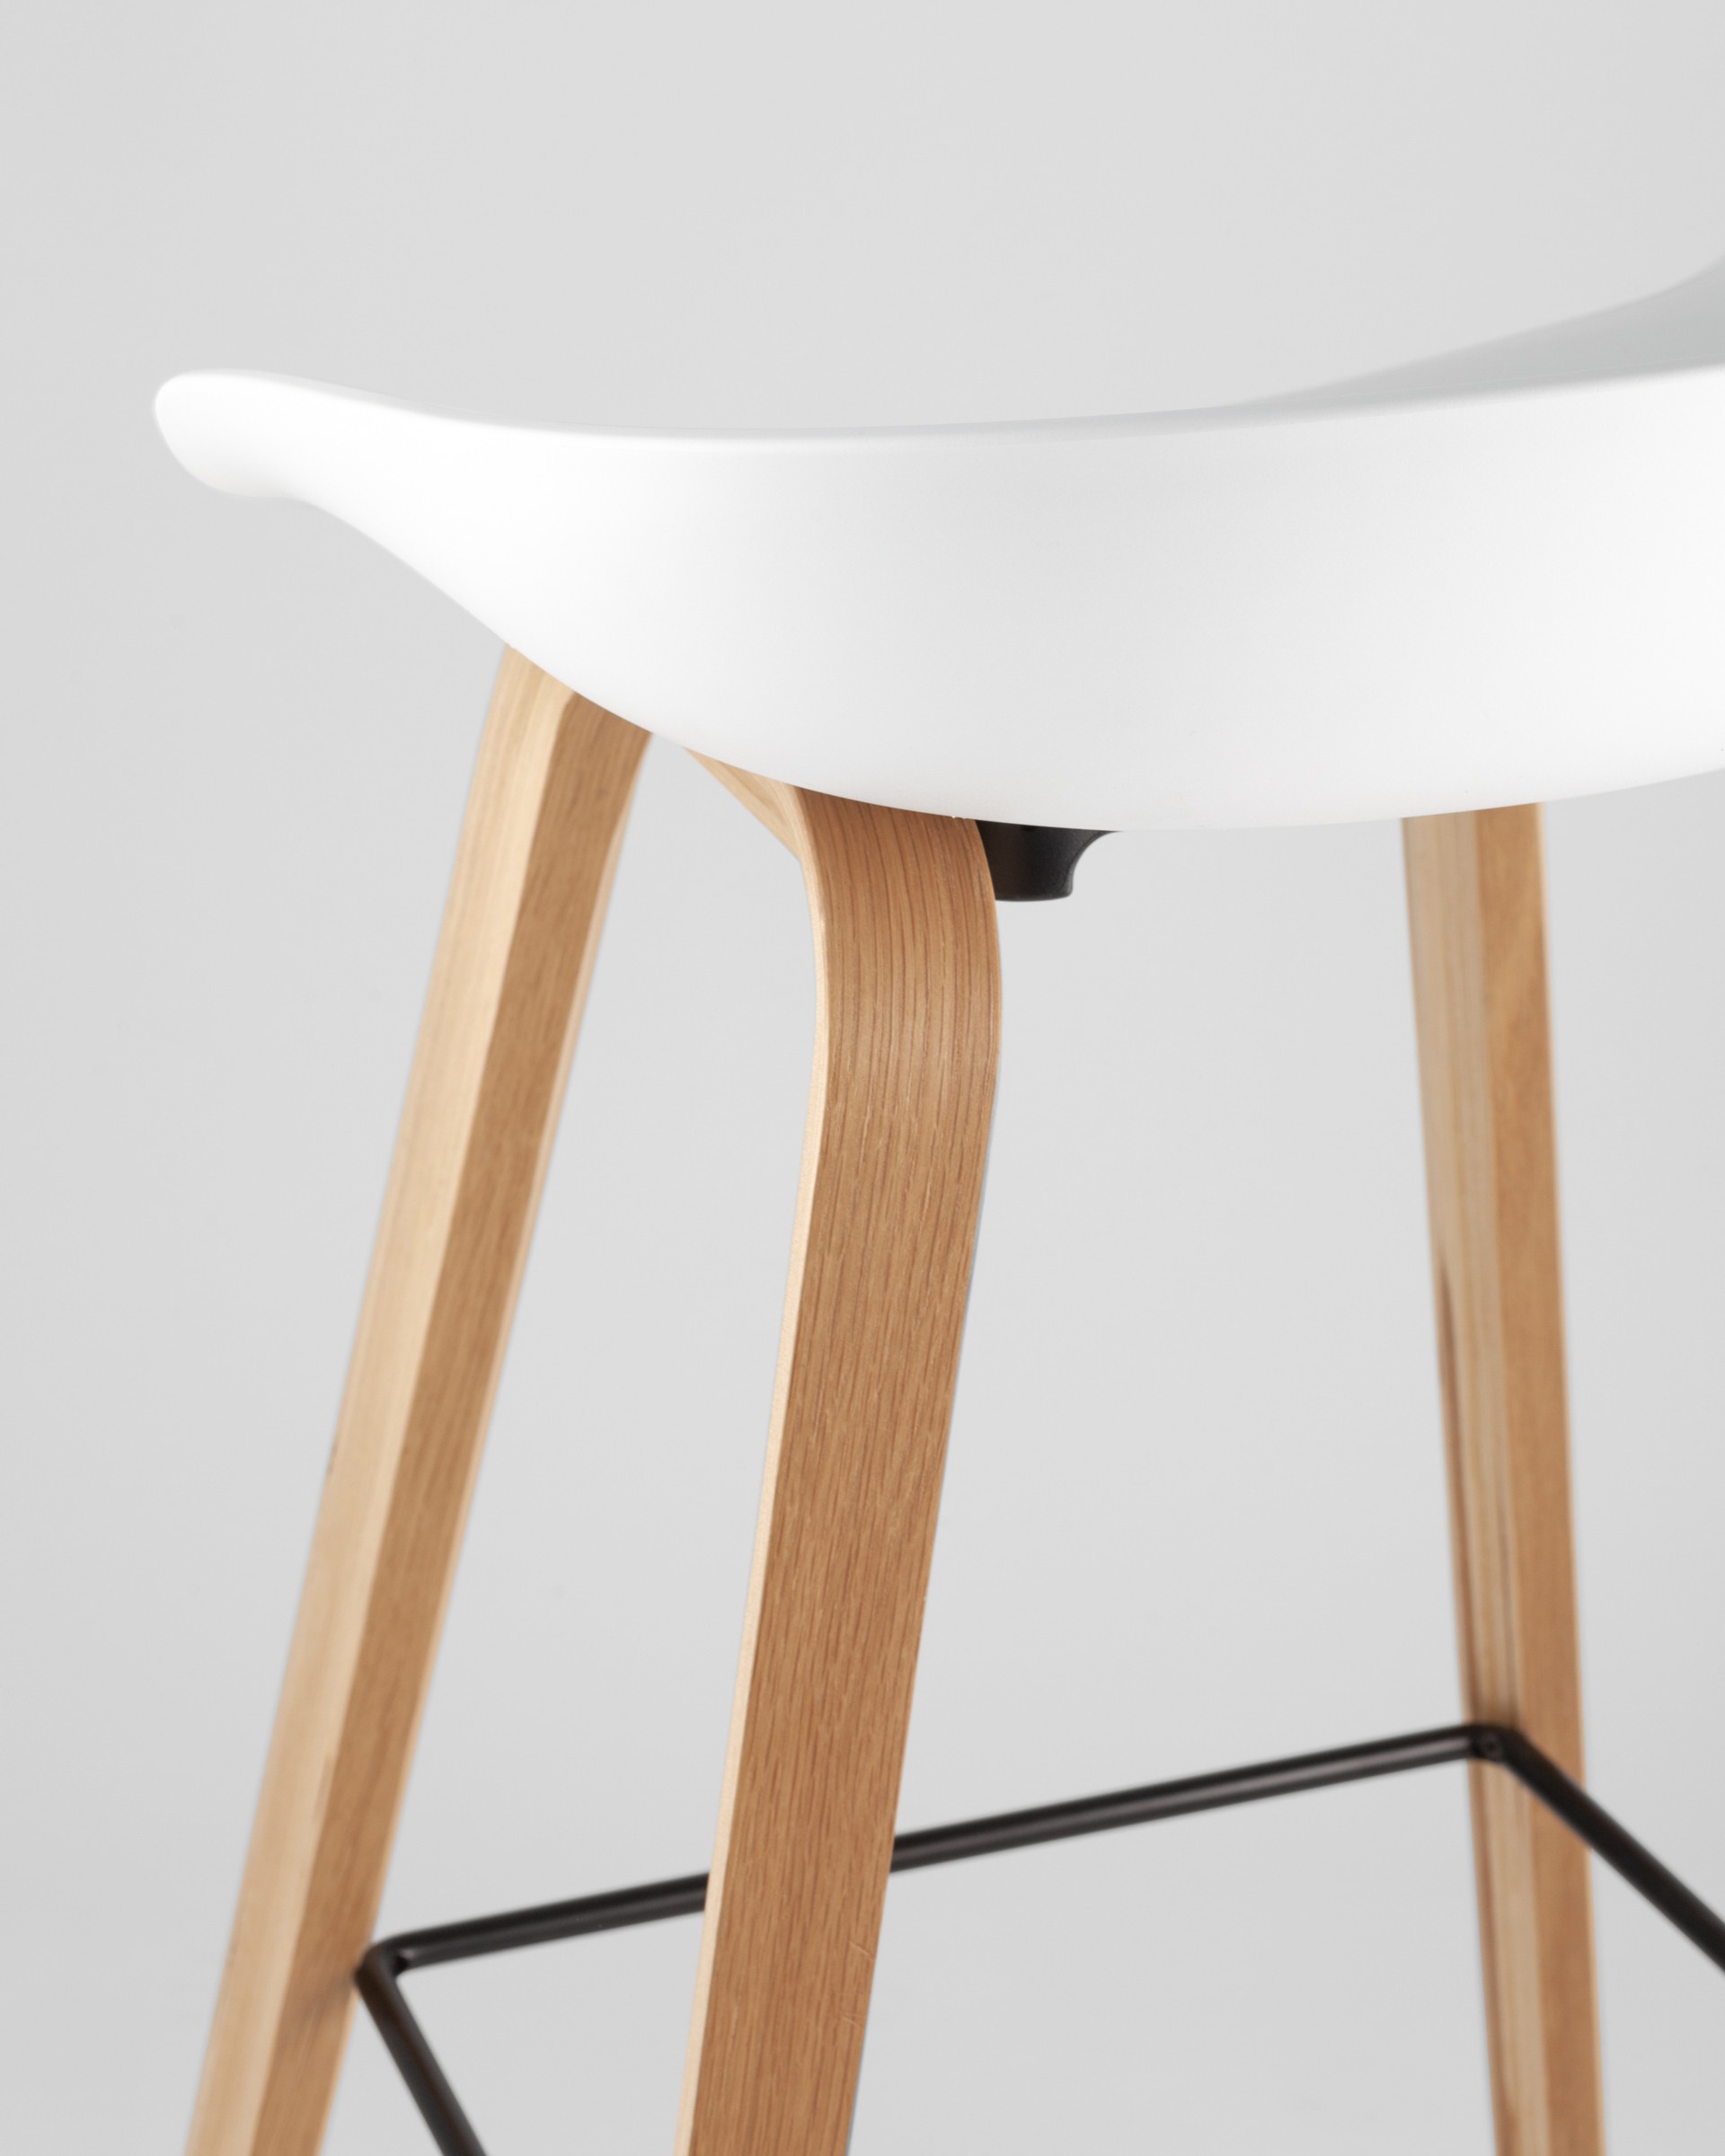 Барный стул Libra БЕЛЫЙ, белый пластик, ножки оттенка естественного дерева